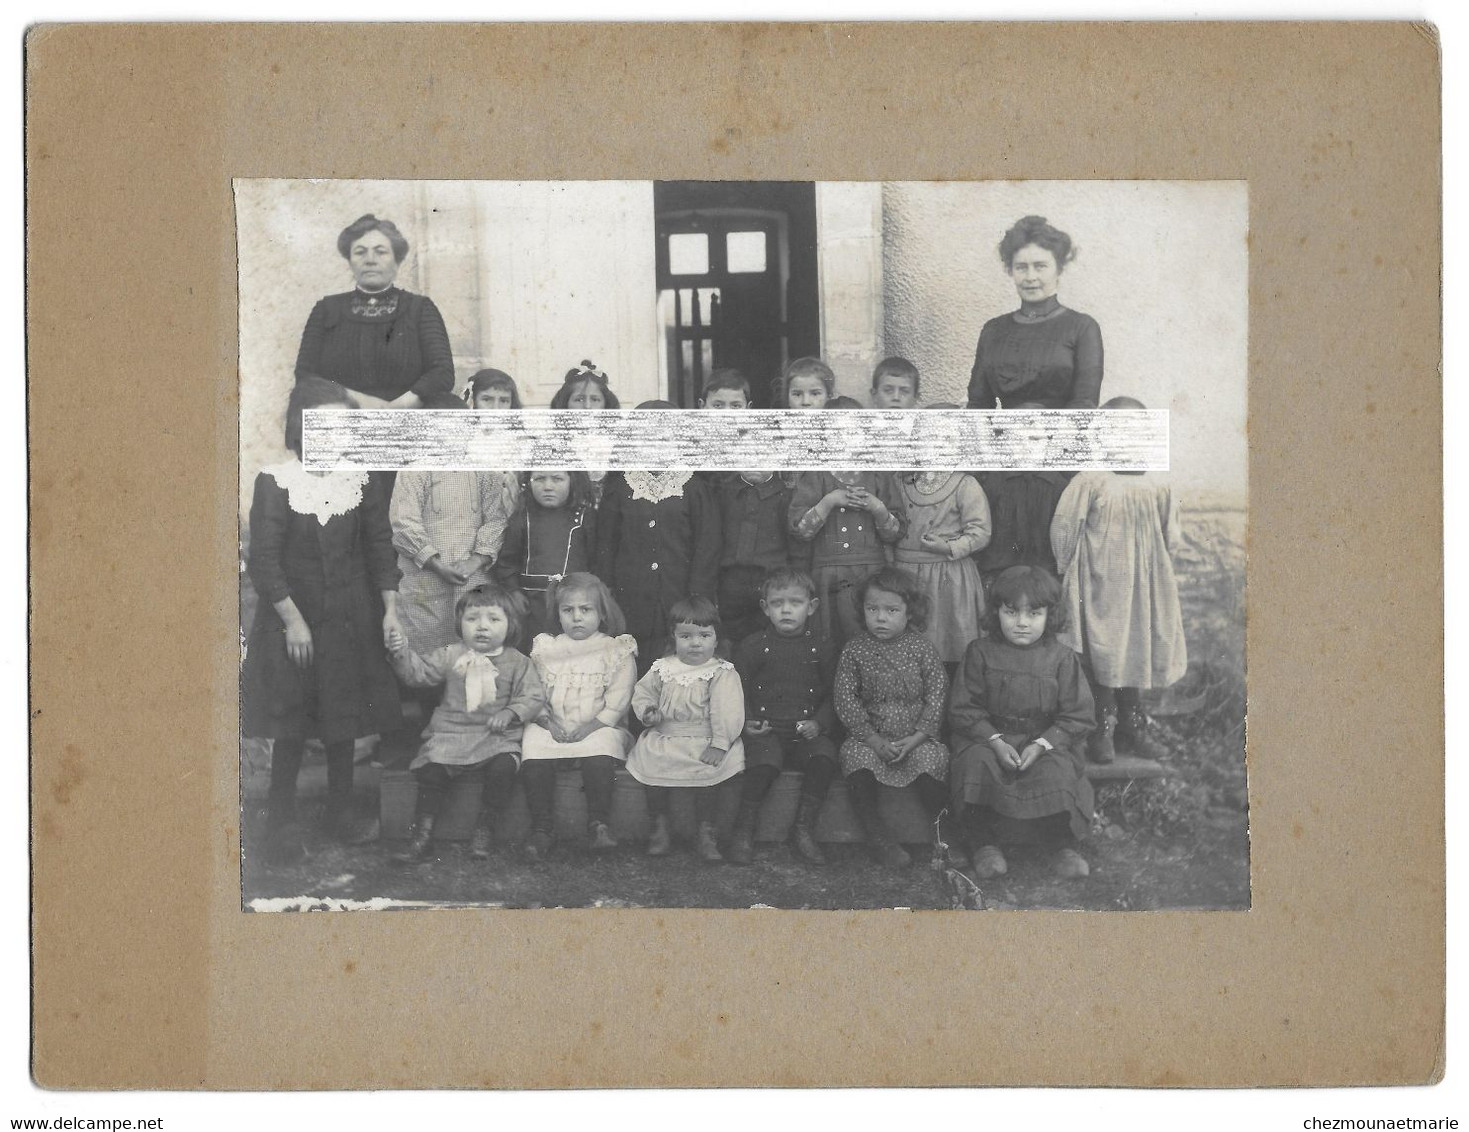 1913 CHAPOIS - PHOTO DE CLASSE GARCONS ET FILLES - JURA - Anonyme Personen